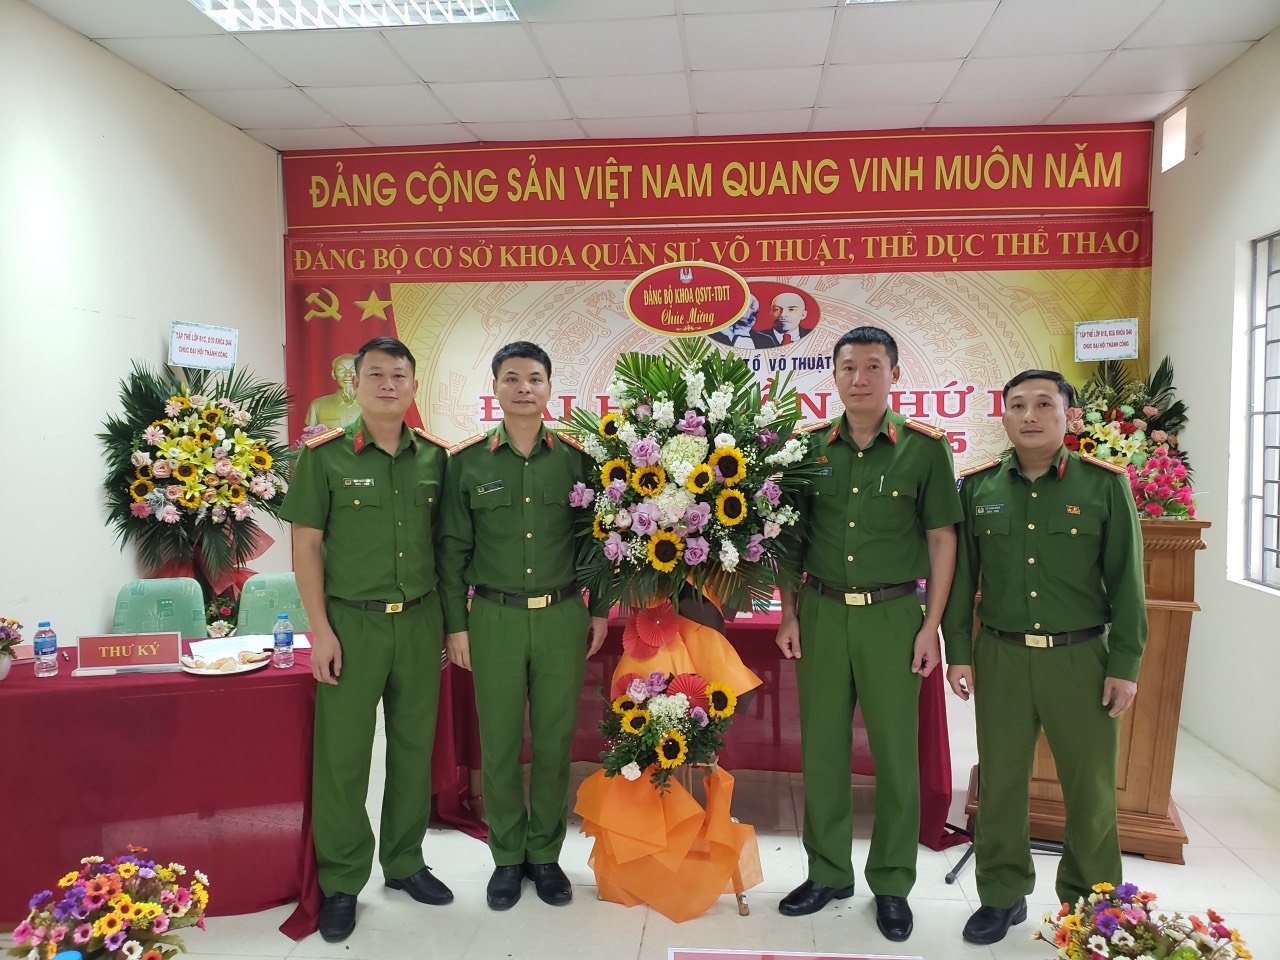 Đảng ủy cơ sở Khoa quân sự, võ thuật, TDTT tặng hoa chúc mừng Ban Chấp hành Chi bộ Tổ Võ thuật